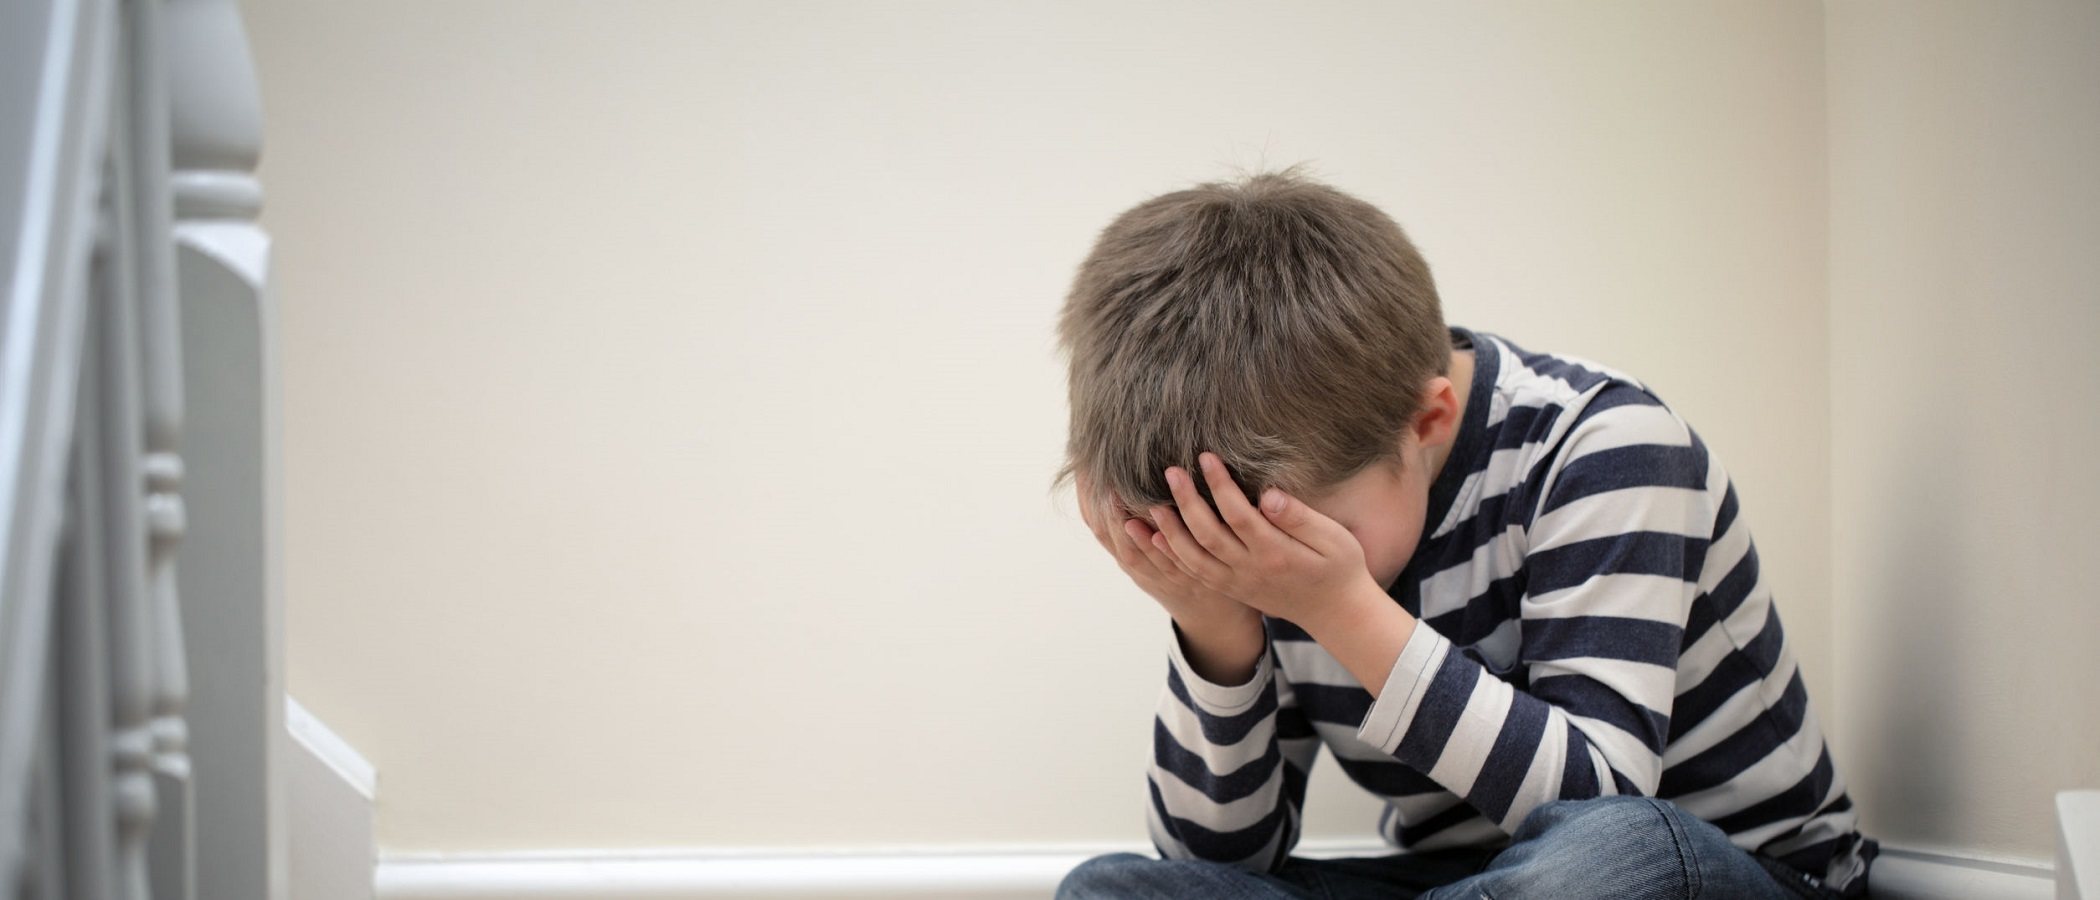 Detectar el Trastorno Límite de Personalidad en la infancia